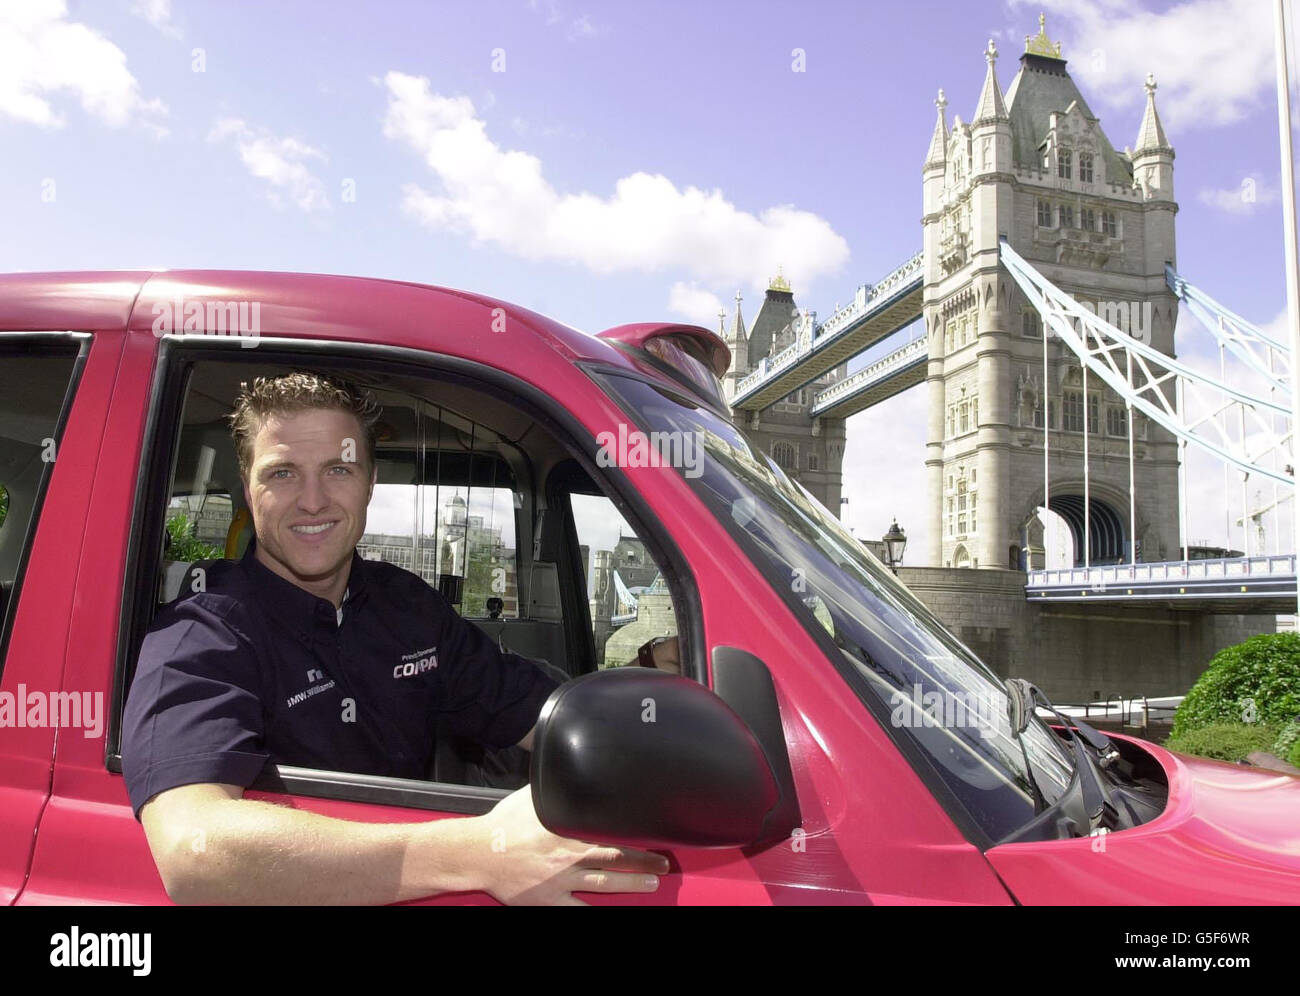 Il pilota Williams di Formula 1, Ralf Schumacher, prova la sua mano al volante di un taxi di Londra di marca Compaq questa mattina.la corsa tedesca, stava zoomando intorno alla capitale a partire da Tower Bridge, prima di competere nel Gran premio di Gran Bretagna a Silverstone questo fine settimana. Foto Stock